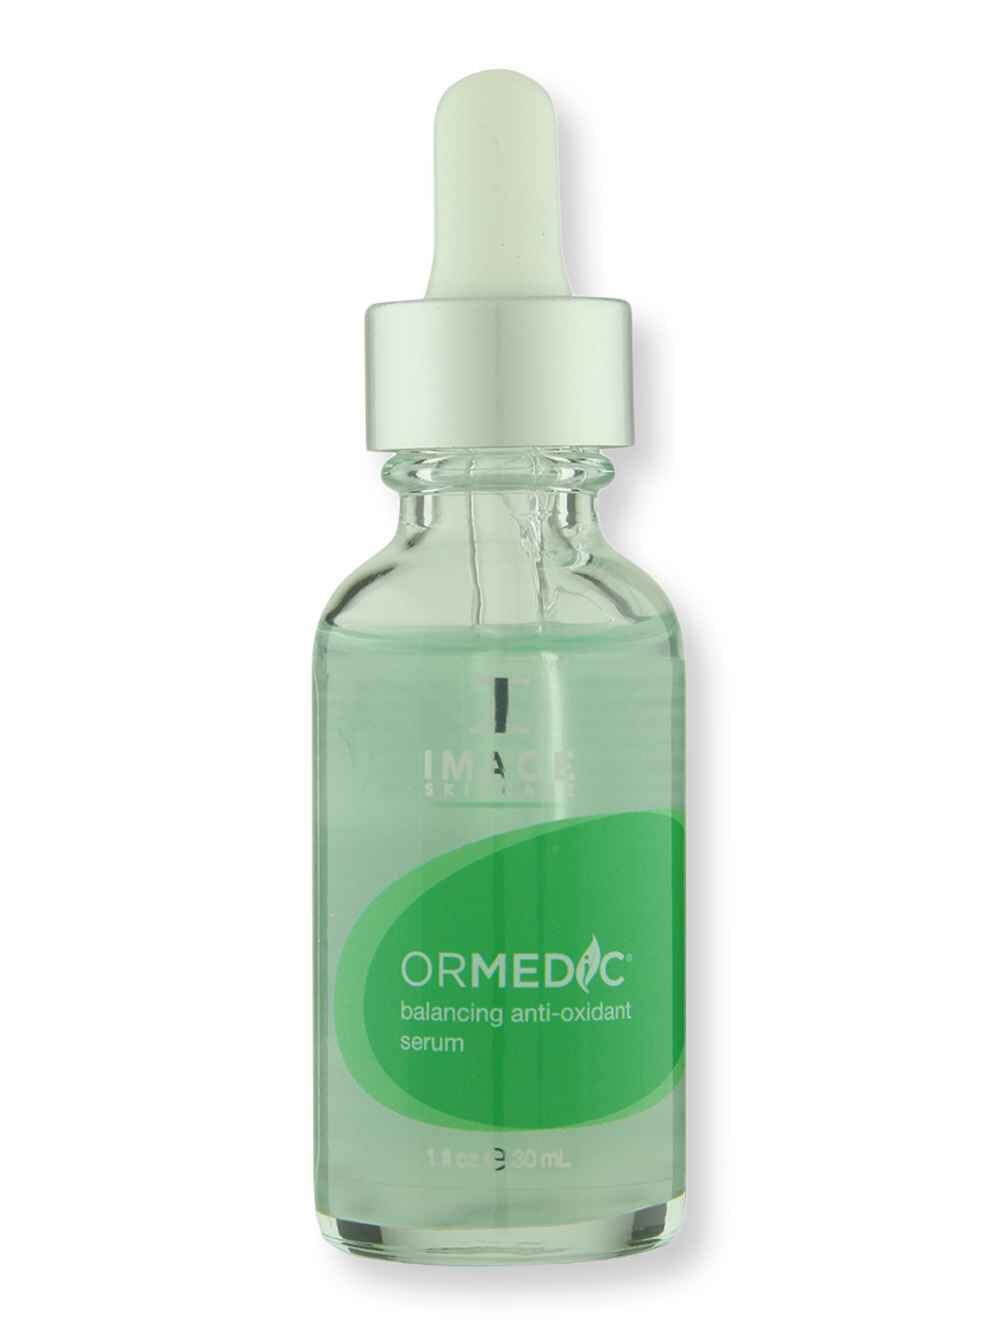 Image Skin Care Image Skin Care Ormedic Balancing Anti-Oxidant Serum 1 oz Serums 